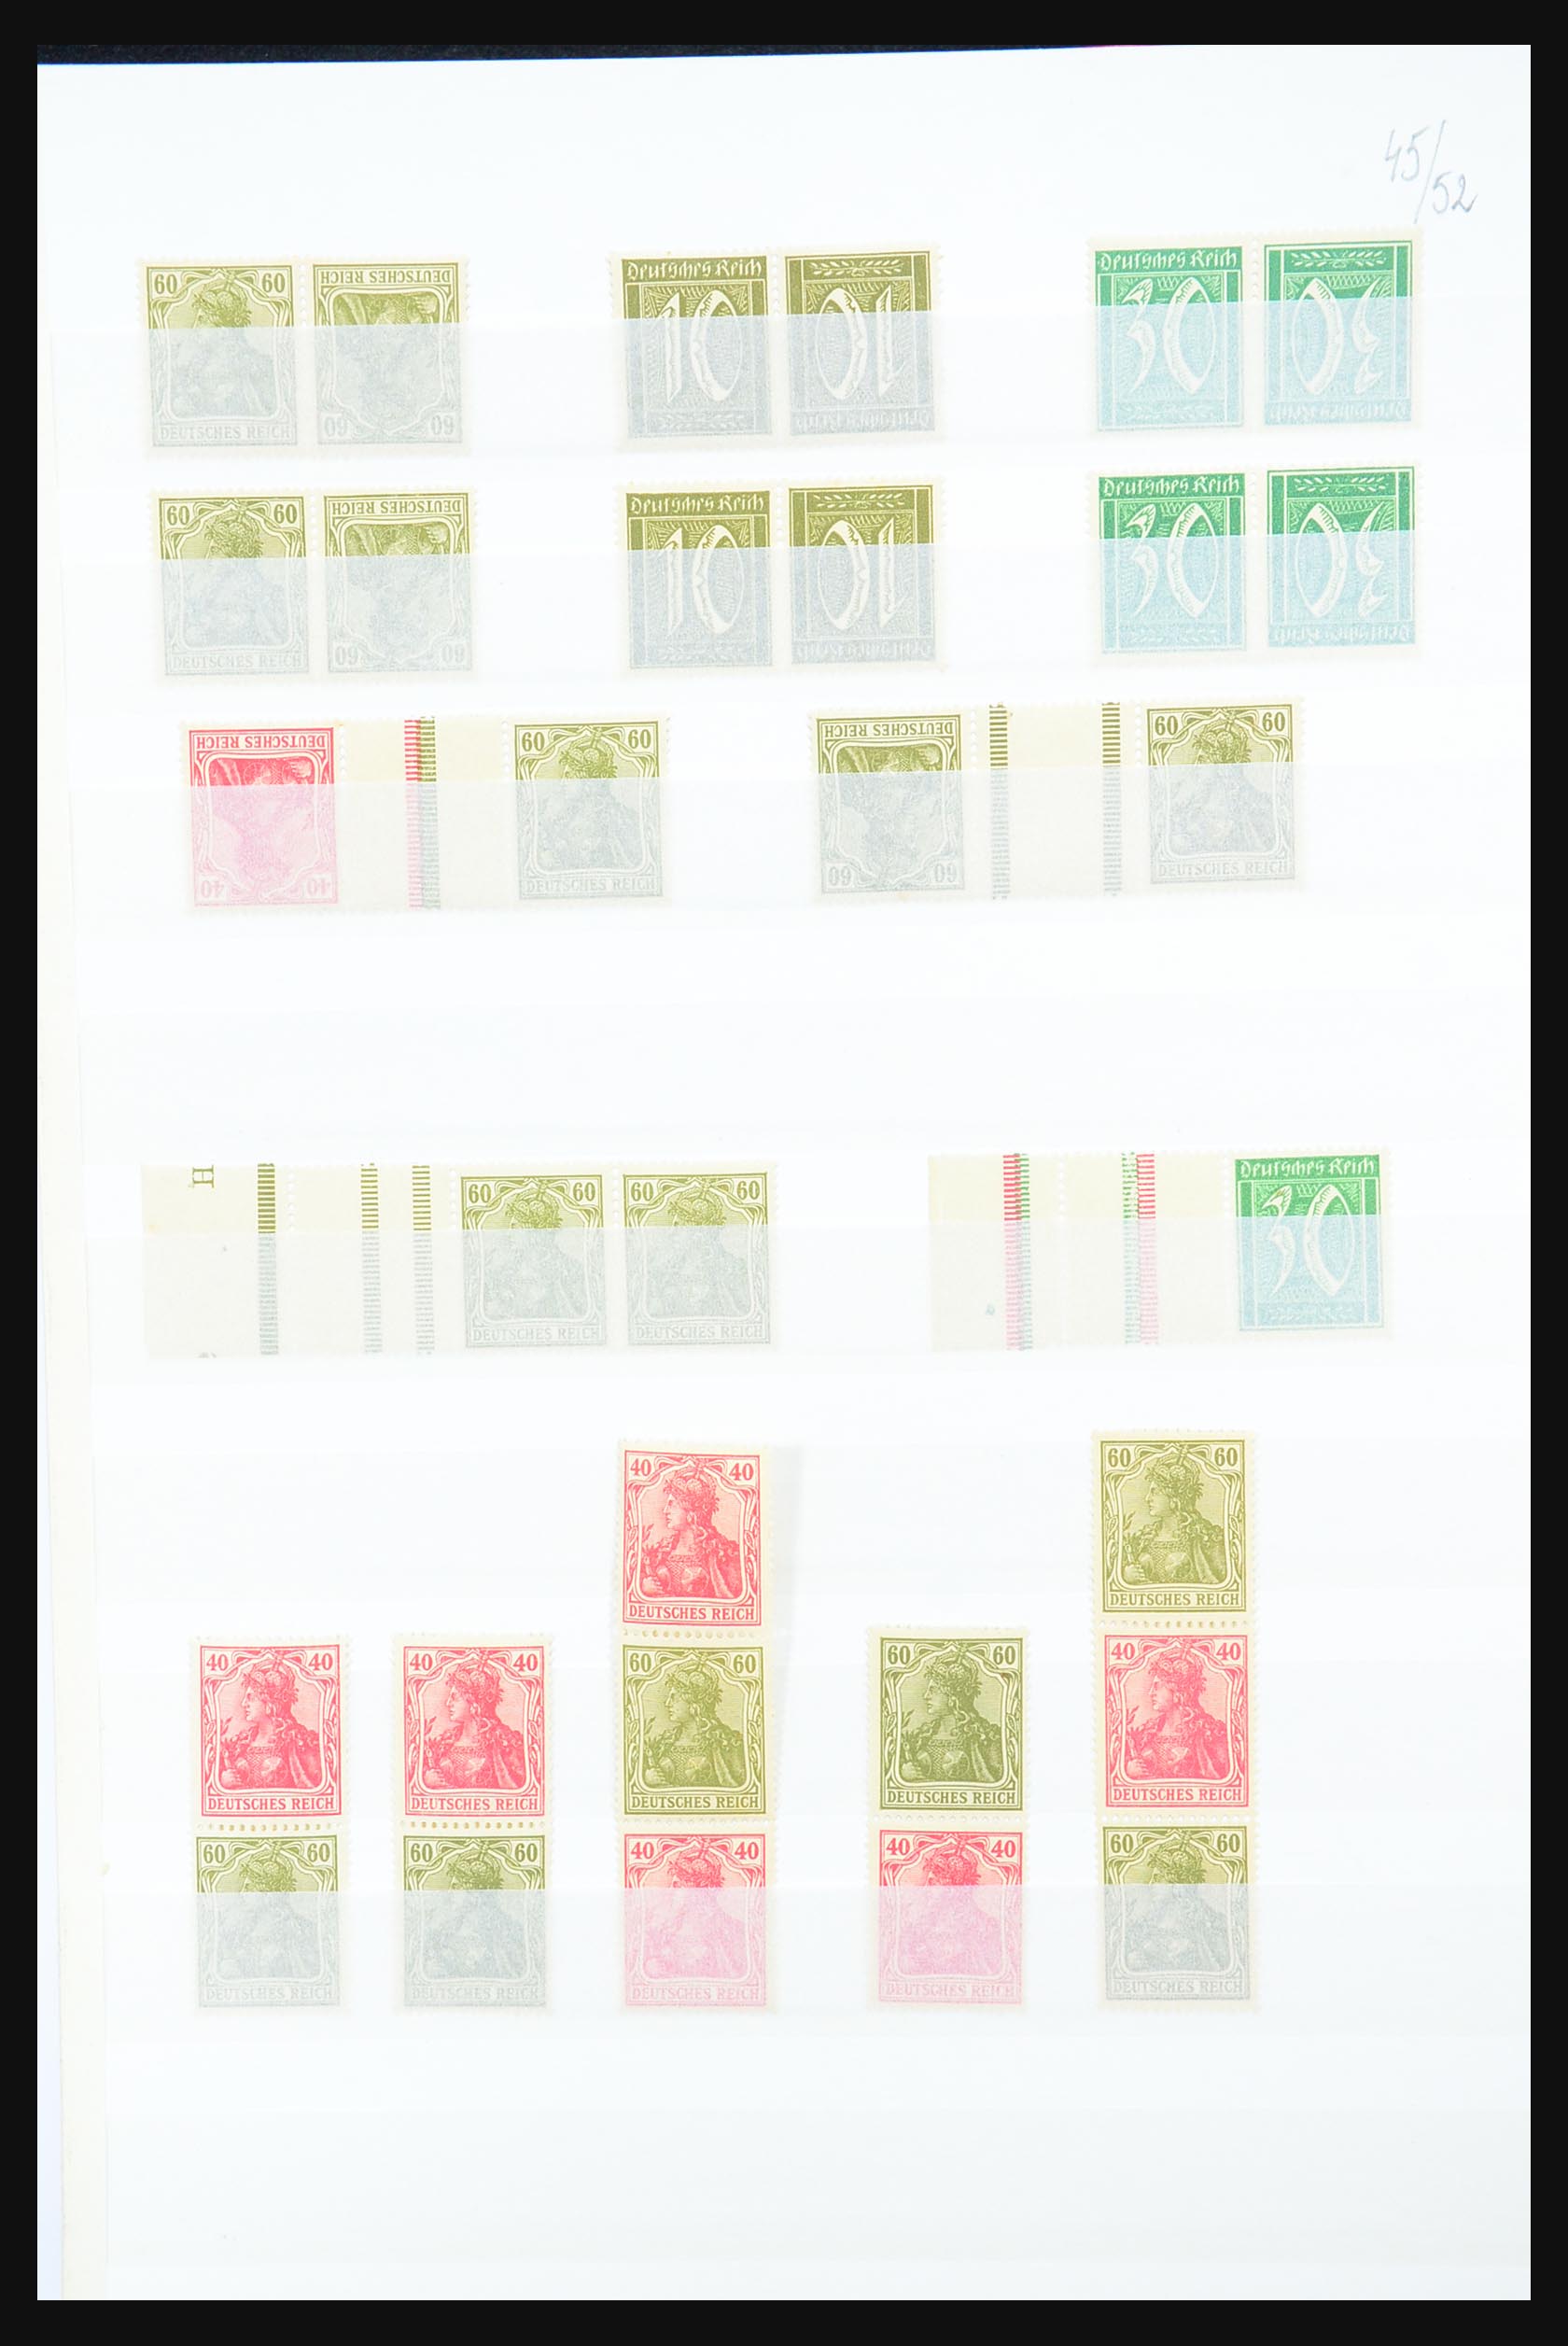 31391 004 - 31391 Duitse Rijk combinaties postfris 1913-1941.